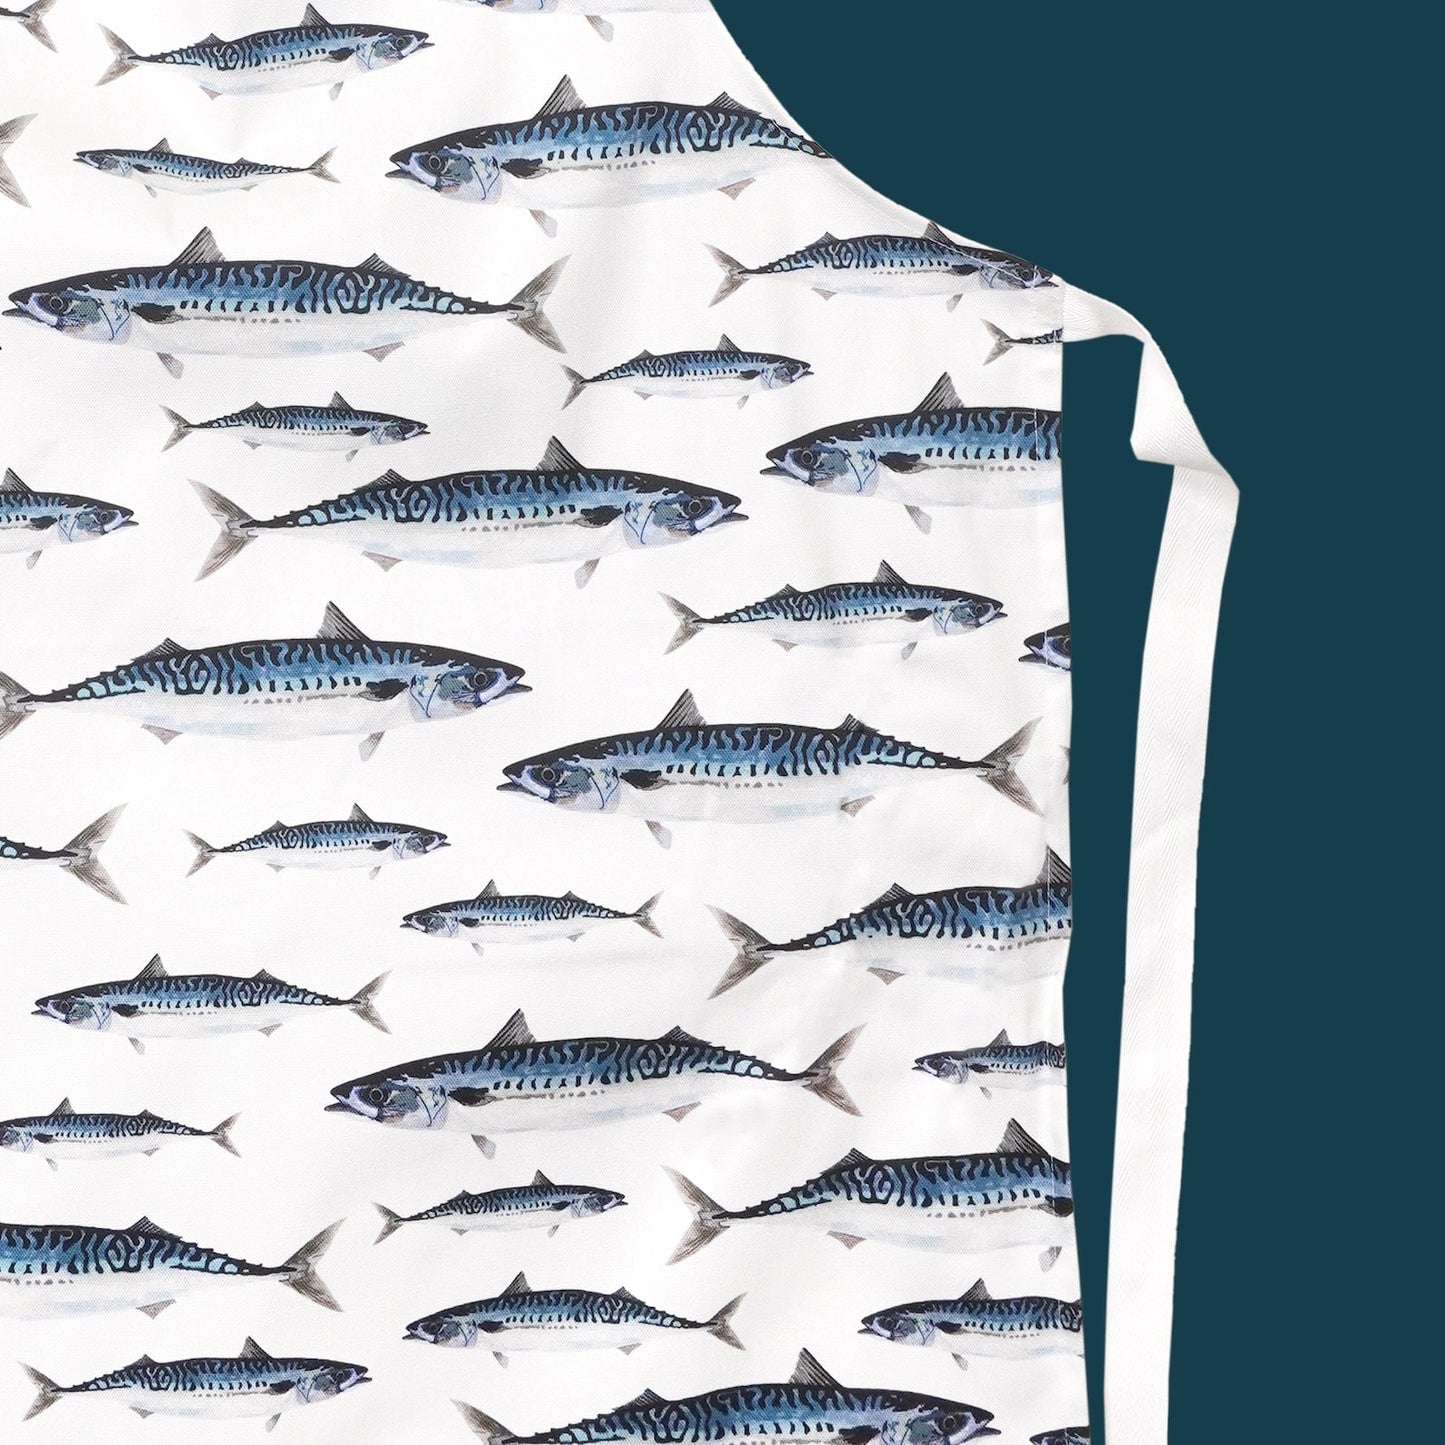 Mackerel illustrated apron bringing seaside style into your kitchen